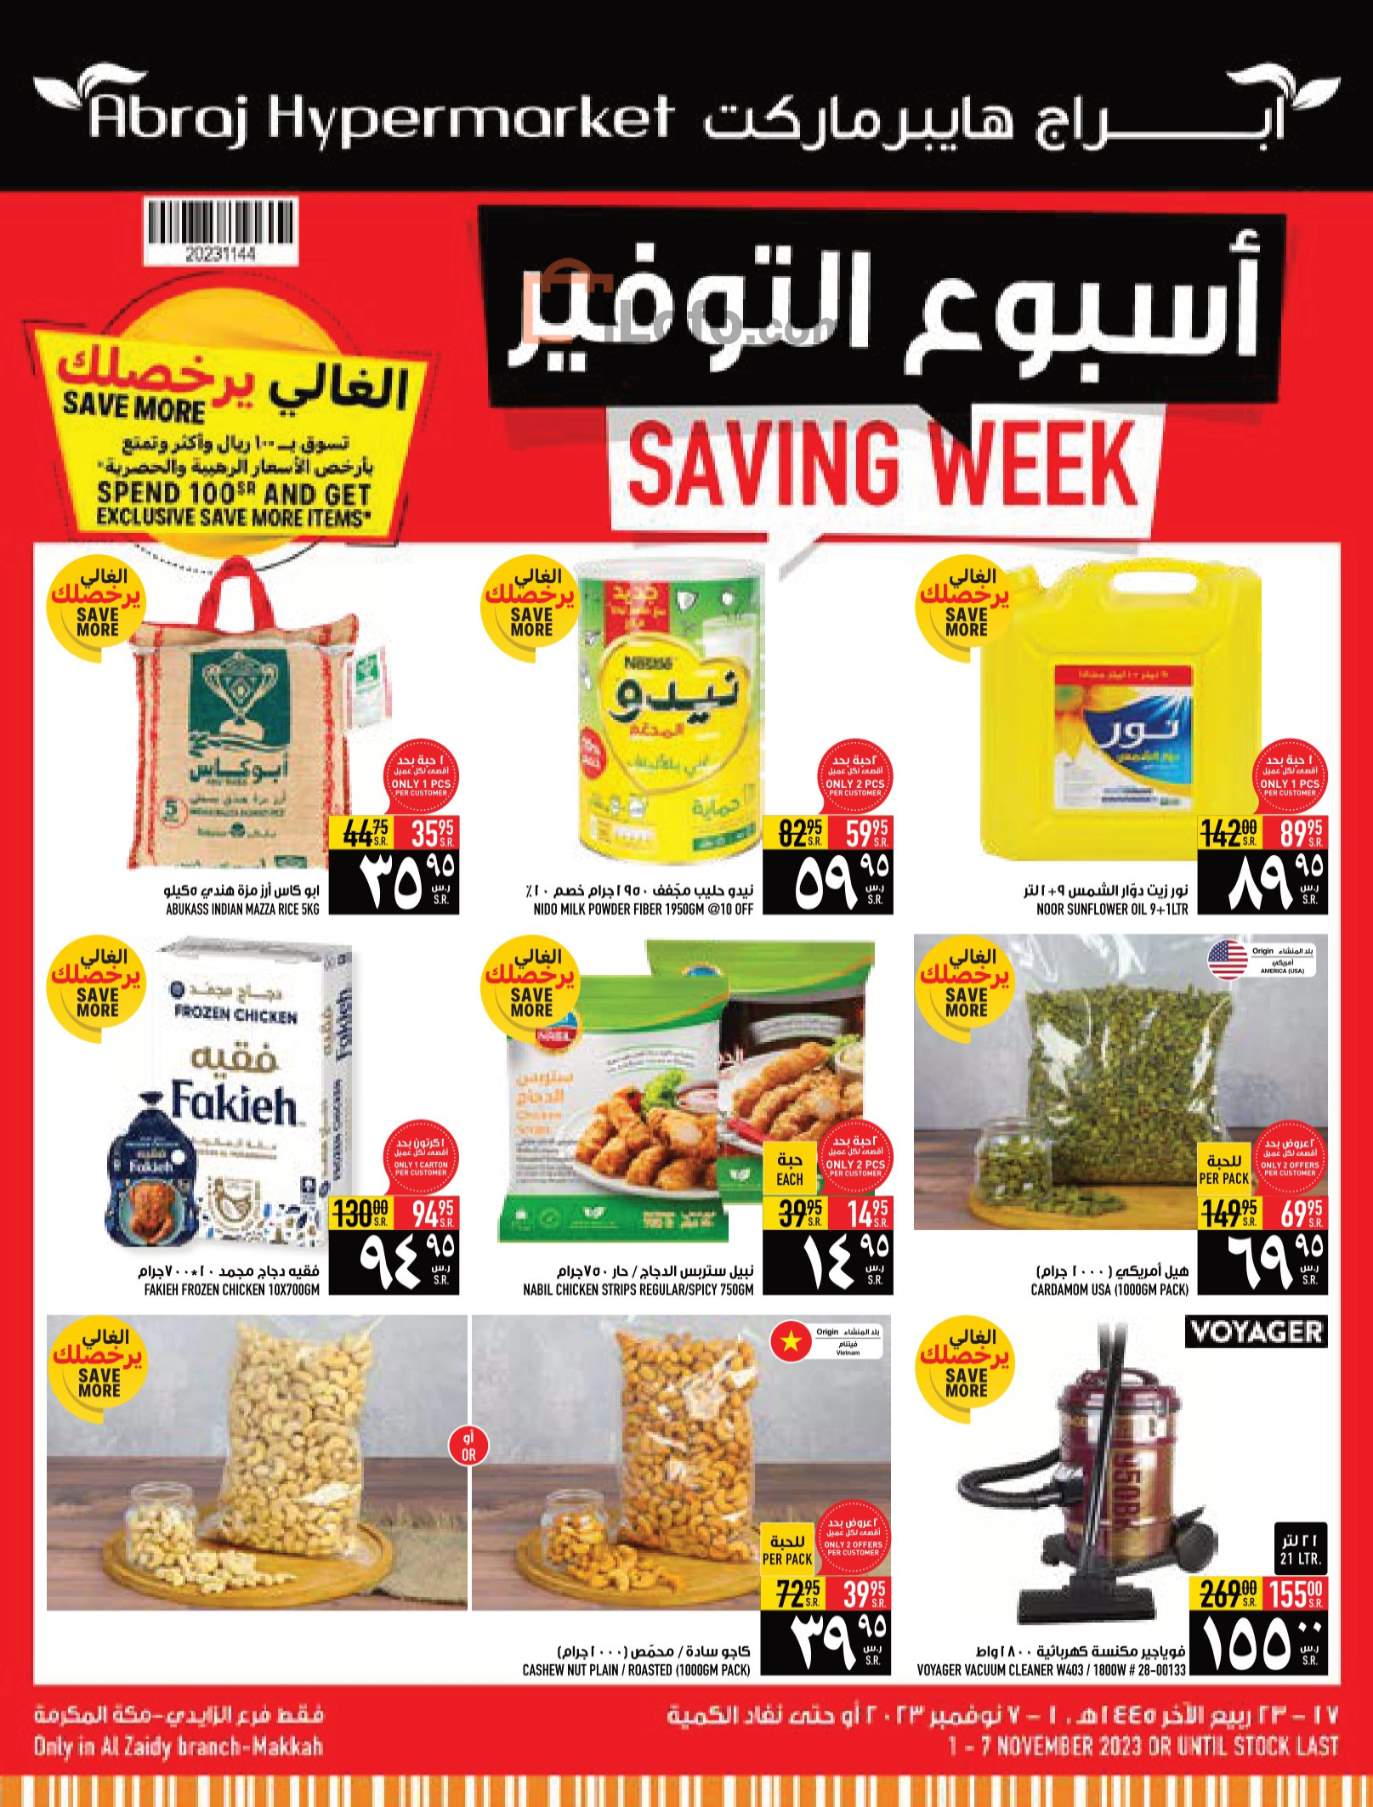 Page 1 at Saving week at Abraj Hypermarket KSA